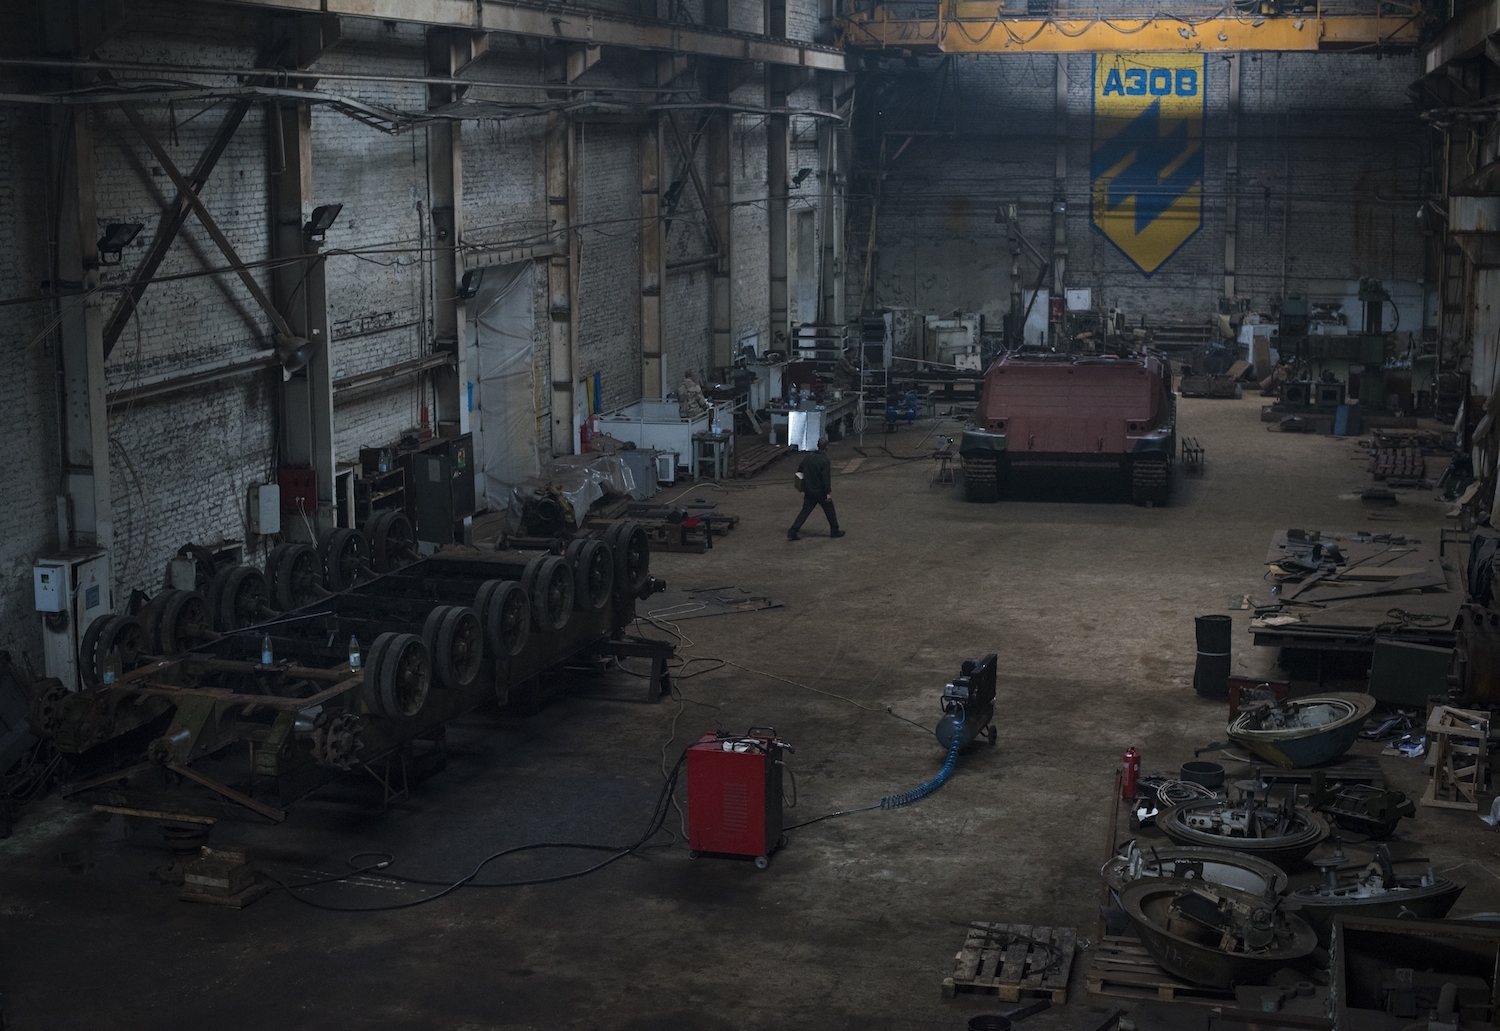 Panorama da garagem do Grupo de Engenharia Azov, 9 de setembro de 2015, Kiev, Ucrânia. À esquerda, um chassi invertido de um tanque se encontra em processo de desmontagem, antes de ser reconstruído como um novo veículo, muito semelhante ao “Azovette” (canto superior direito), que passou por construção similar. Créditos: Pete Kiehart 